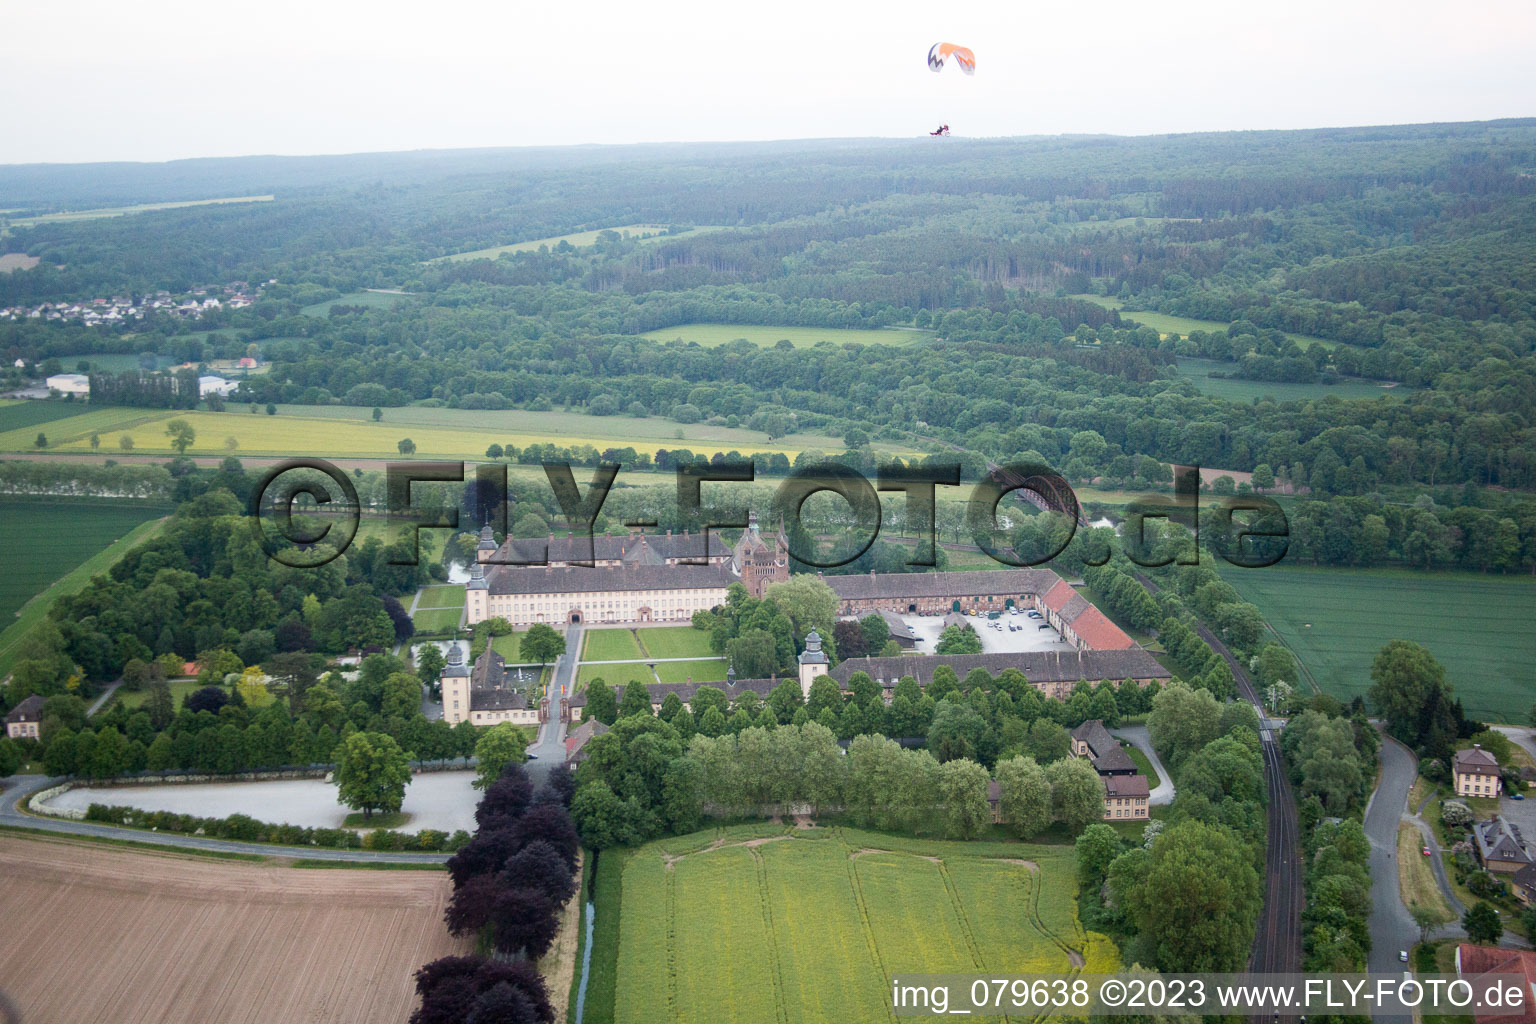 Corvey Castle in Höxter in the state North Rhine-Westphalia, Germany